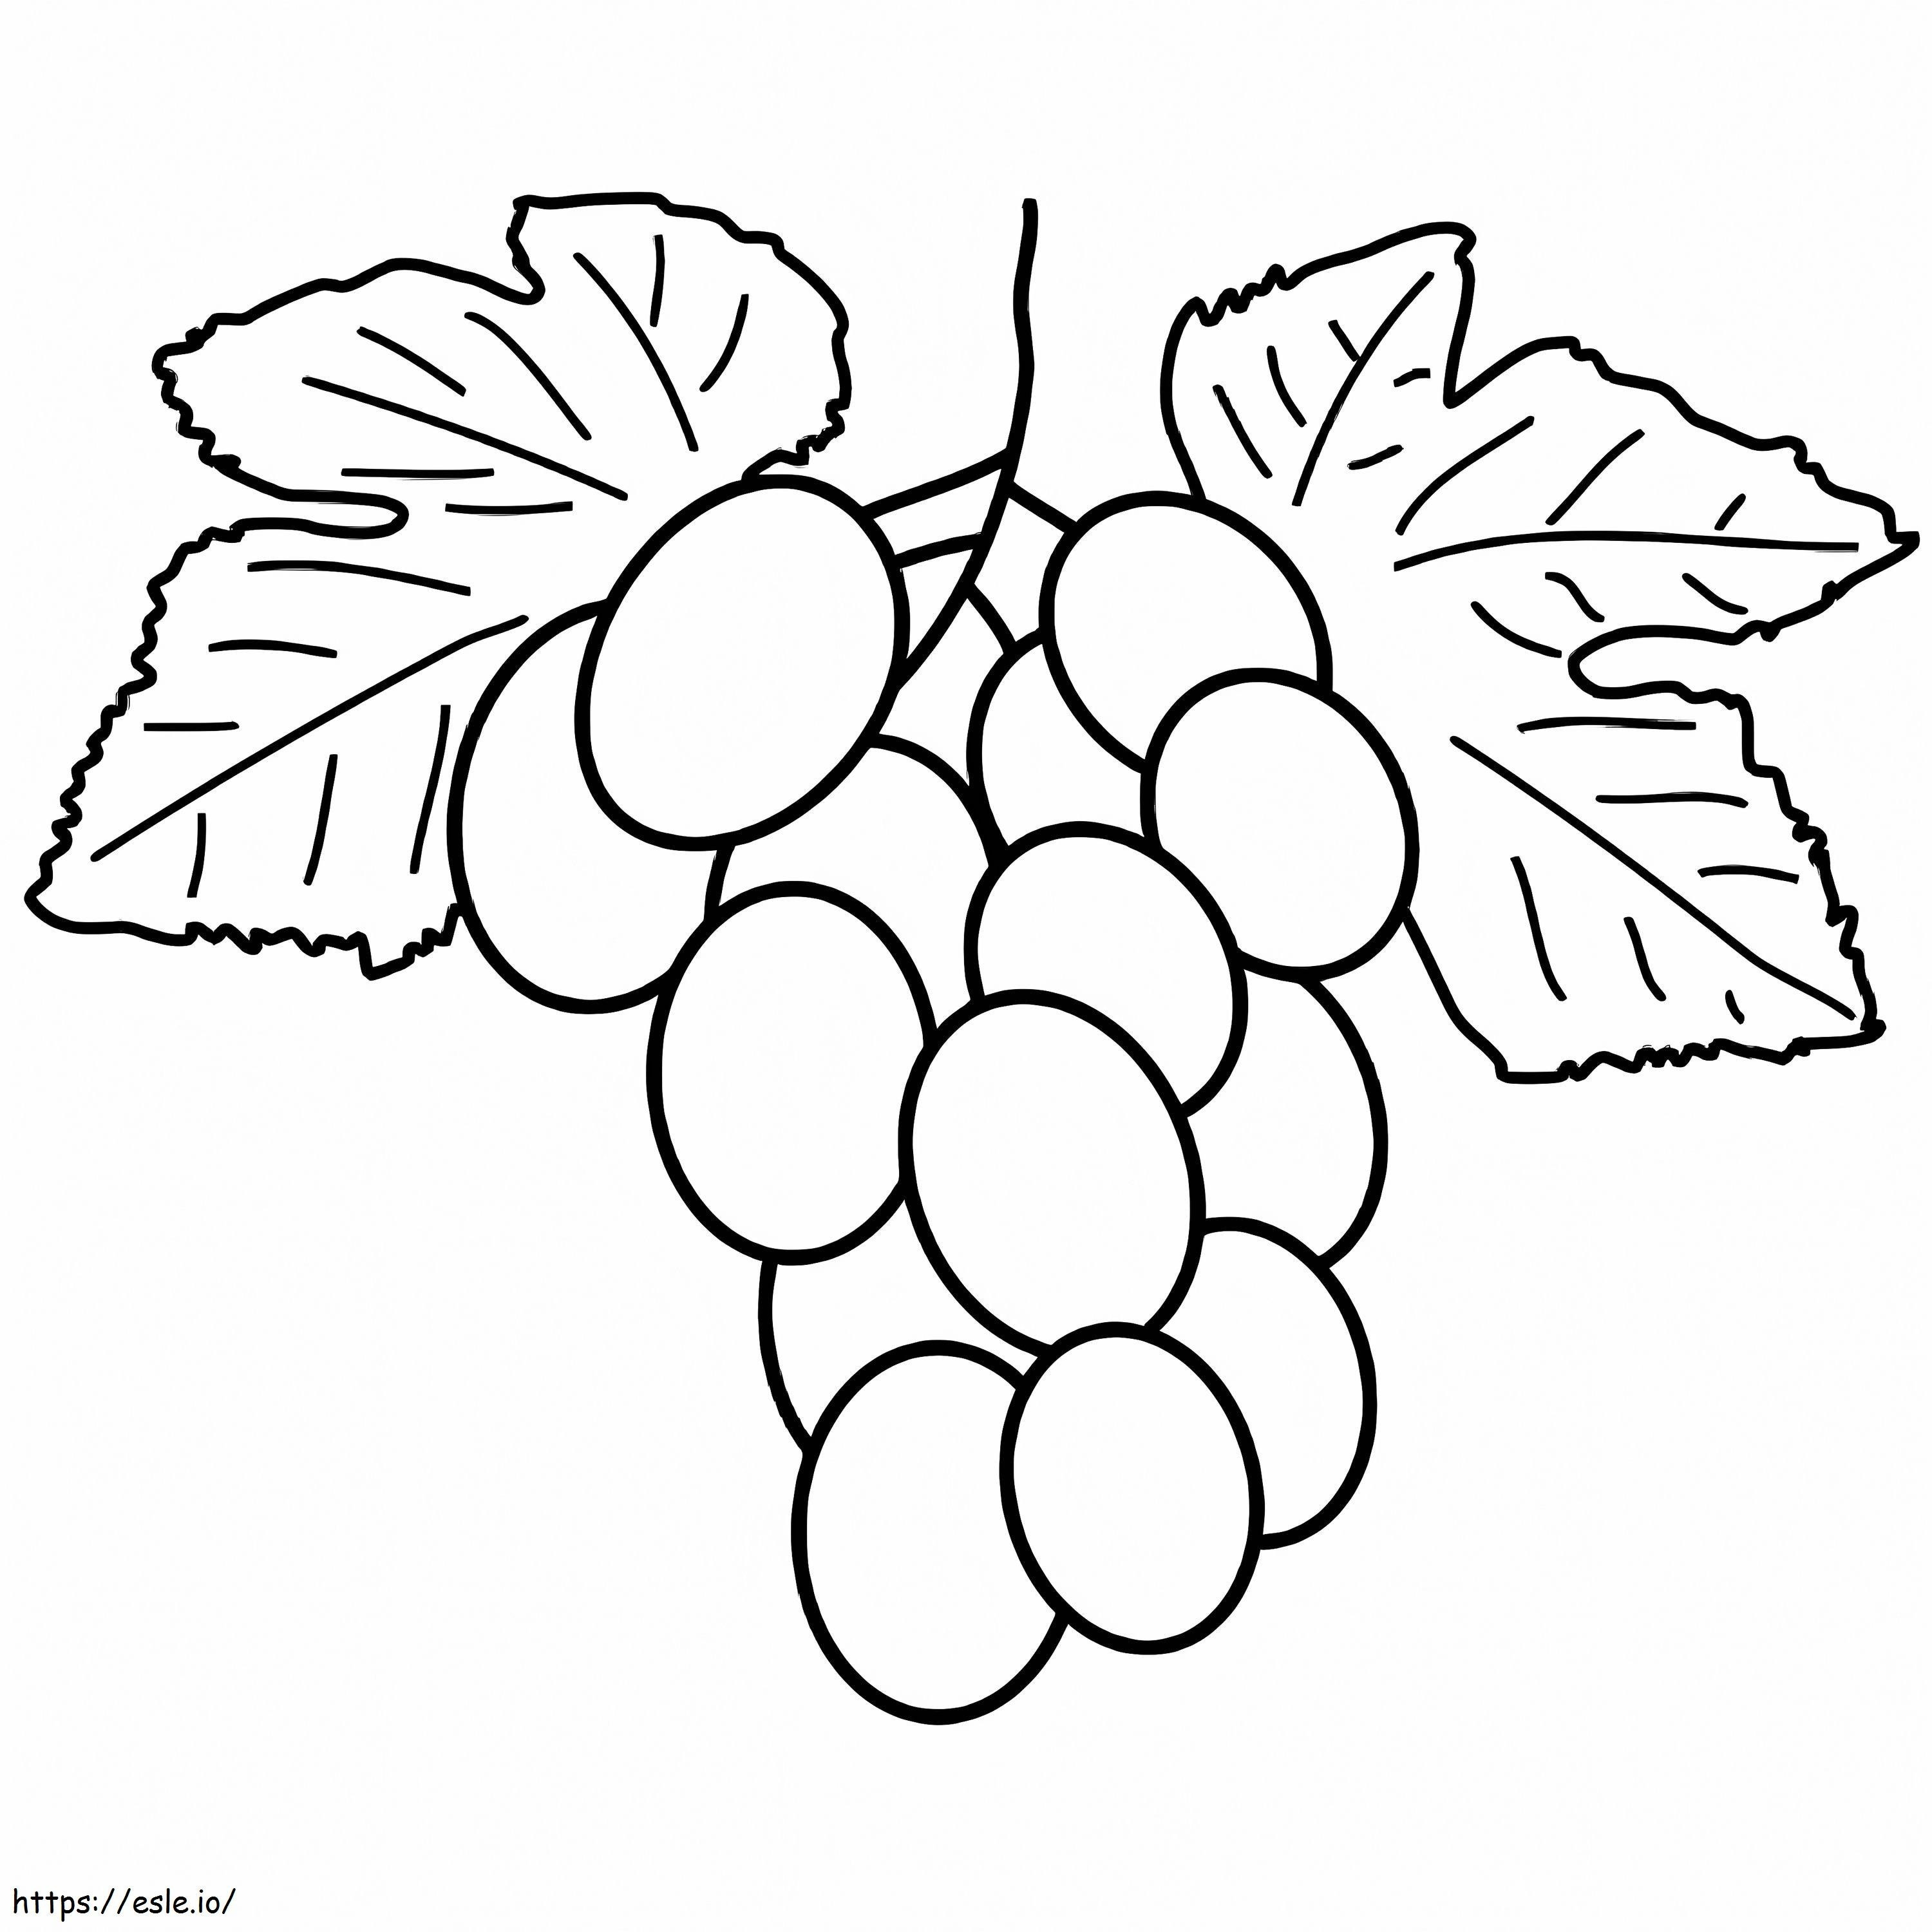 Grappolo d'uva da colorare